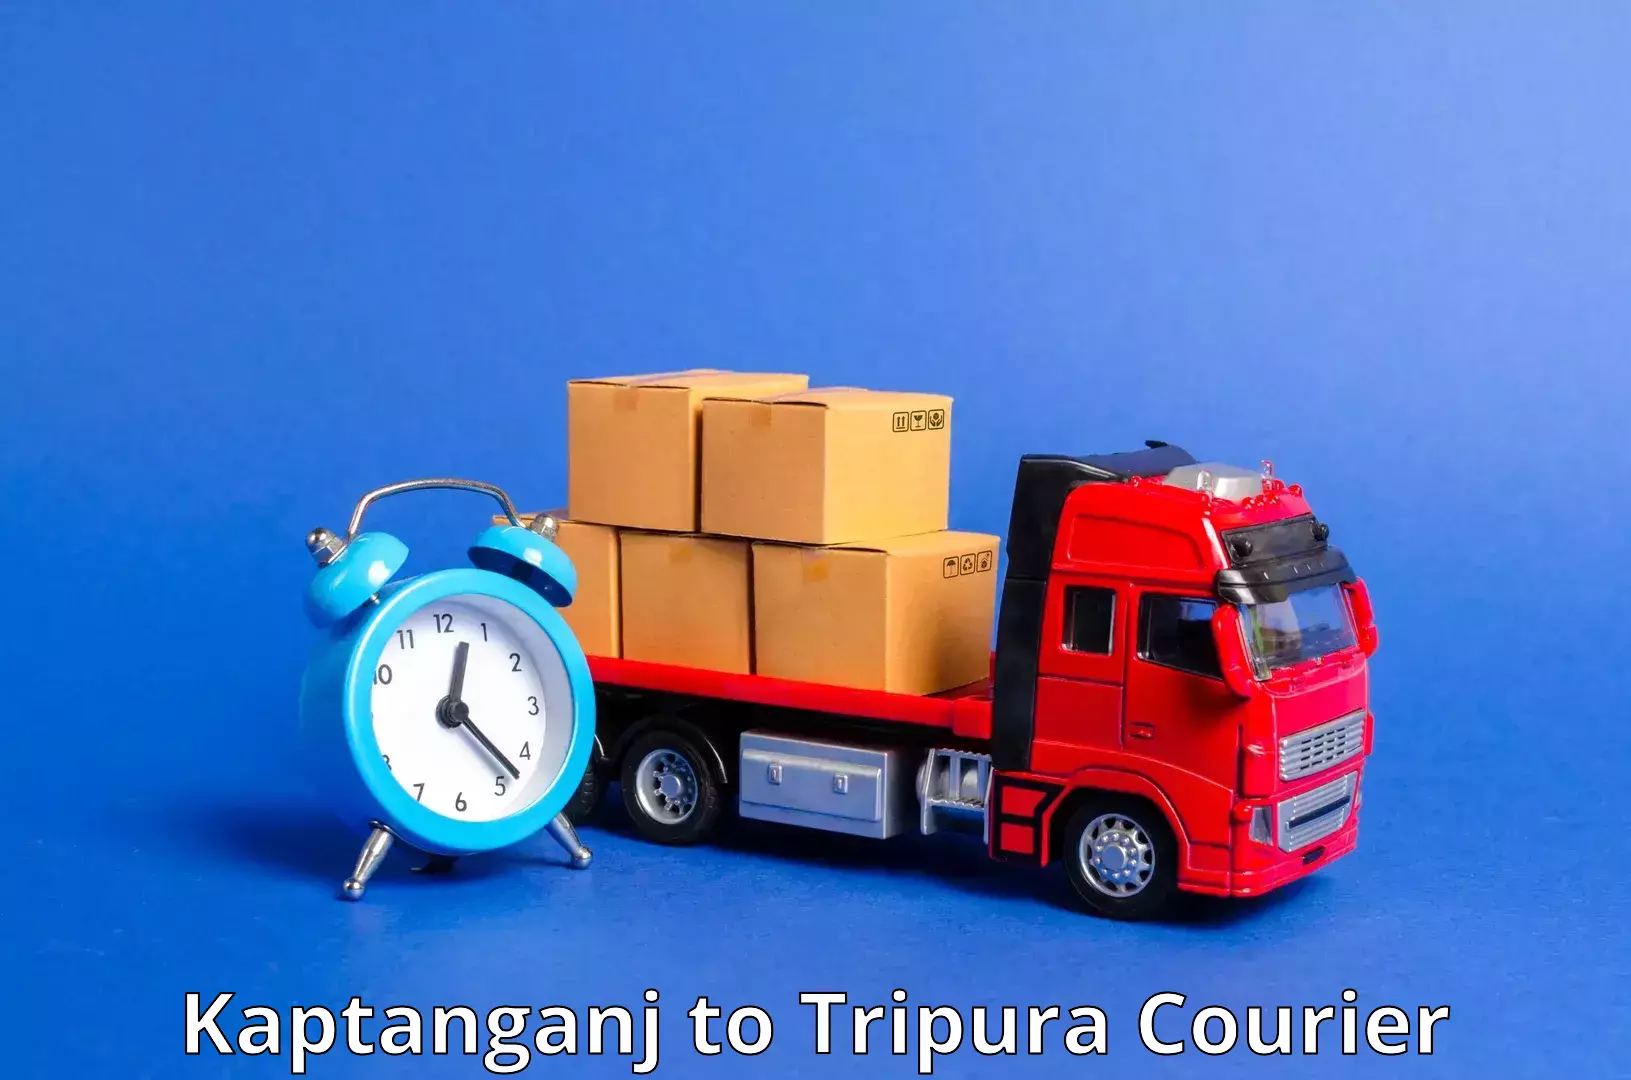 Modern courier technology Kaptanganj to Tripura